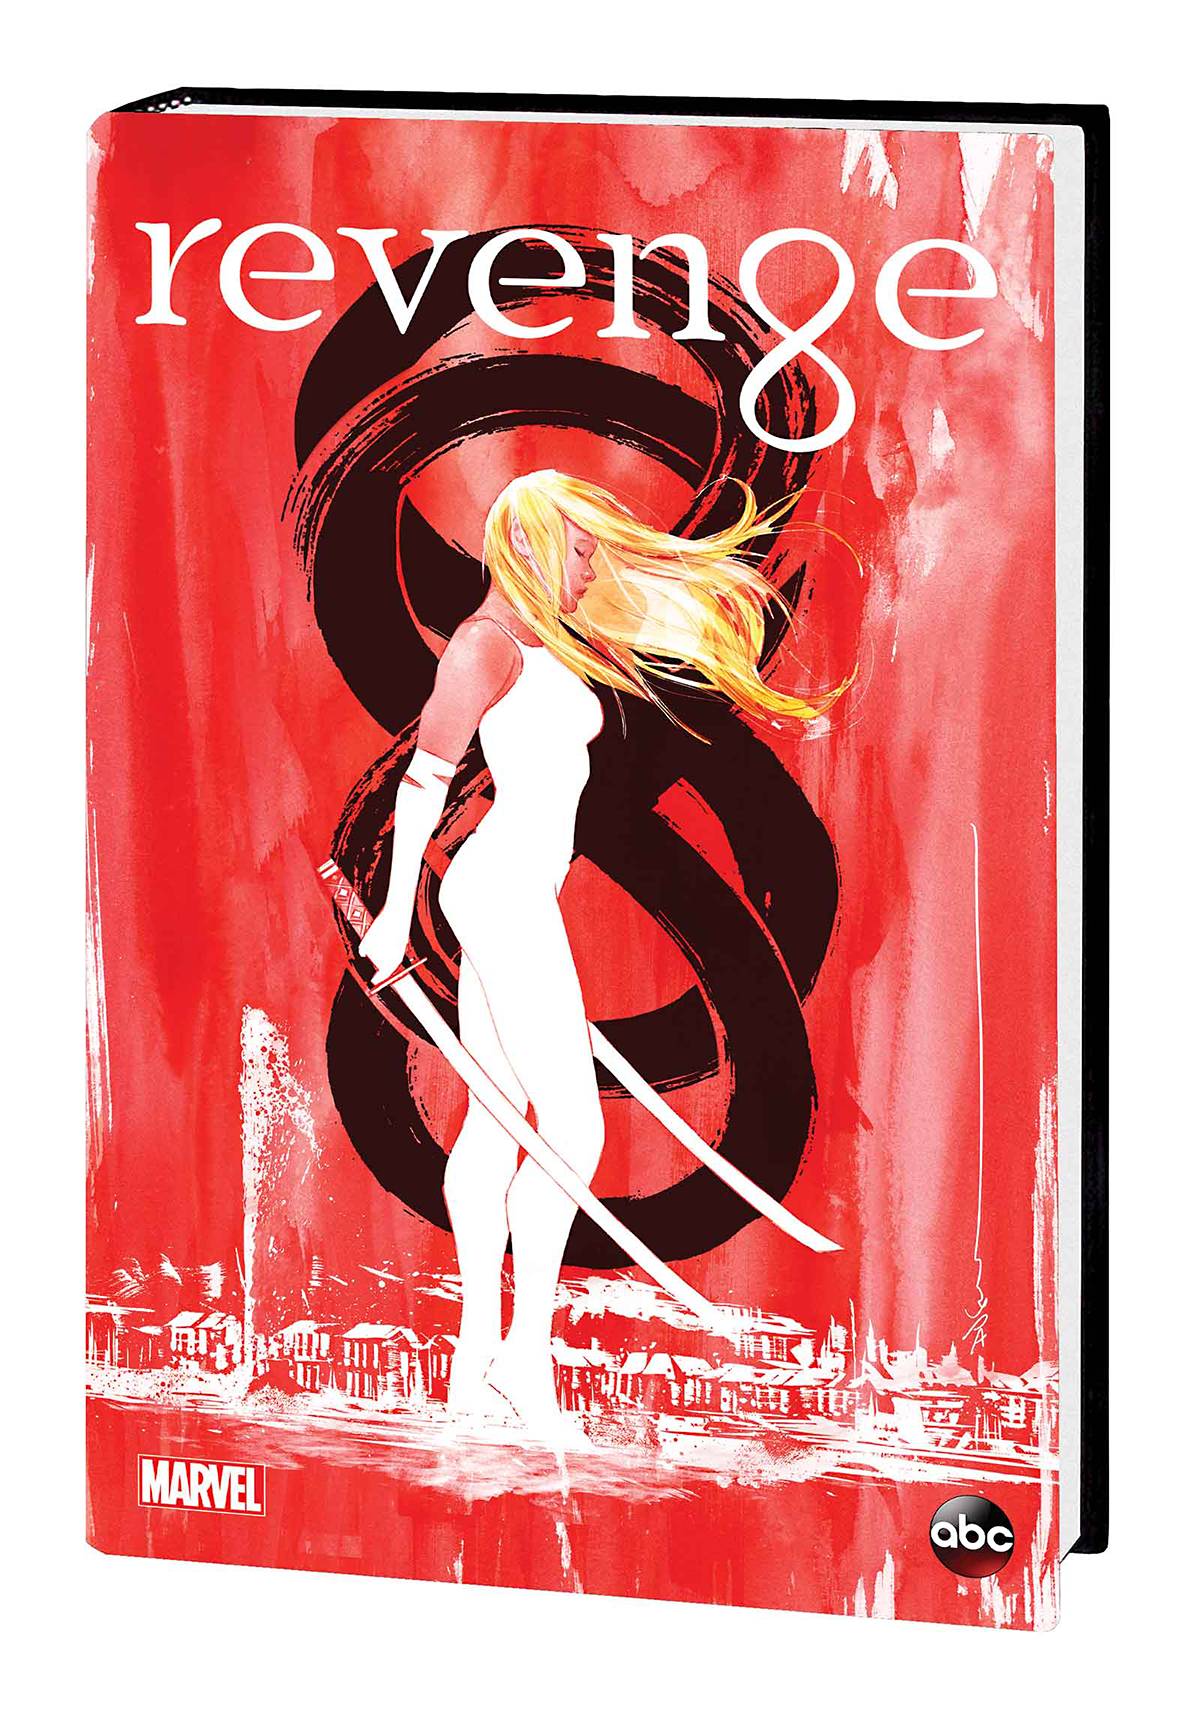 Revenge Secret Origin of Emily Thorne Hardcover